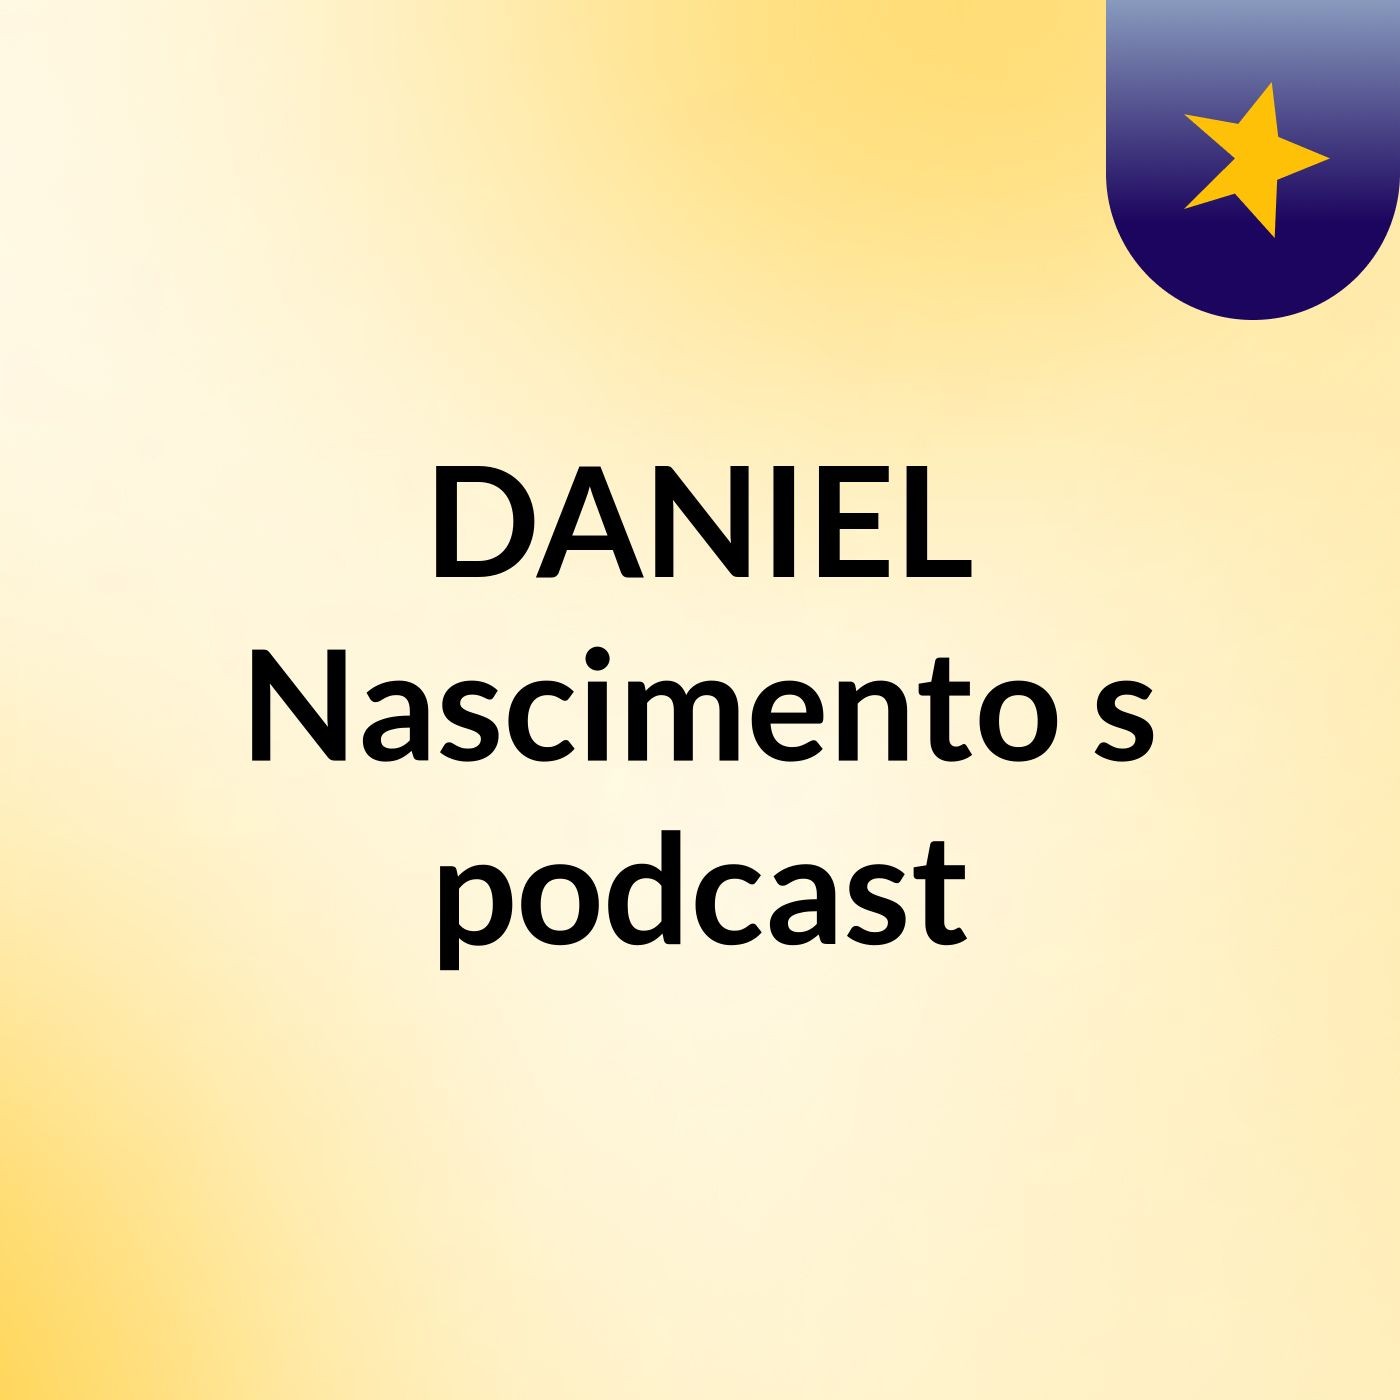 DANIEL Nascimento's podcast